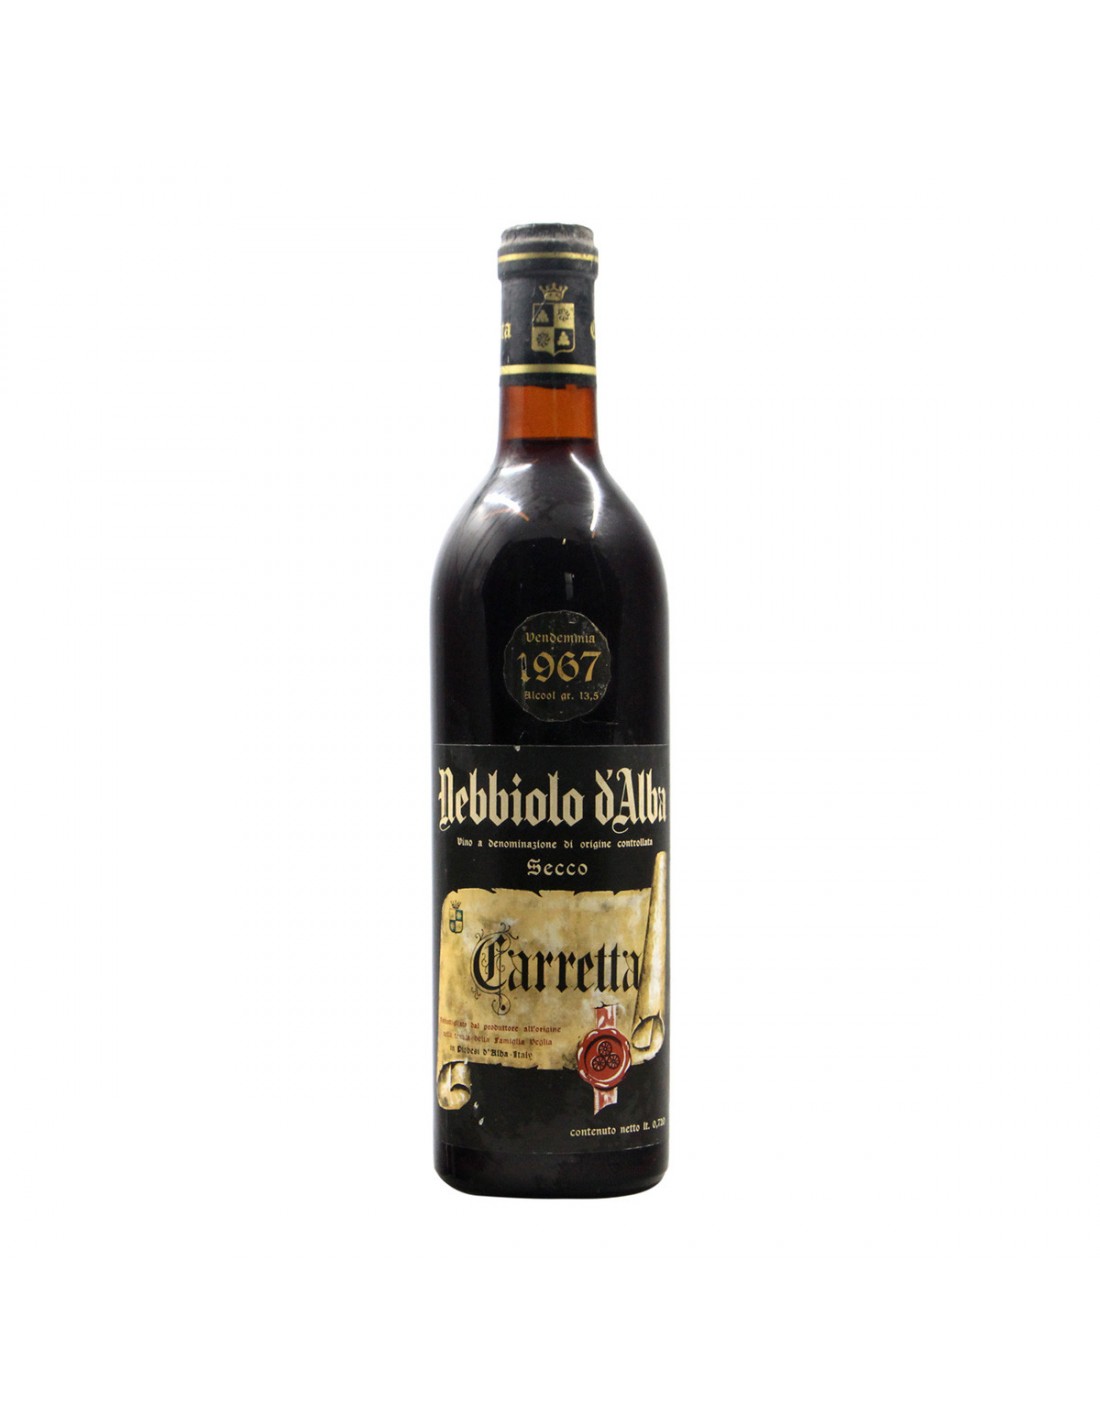 NEBBIOLO D'ALBA 1967 TENUTA CARRETTA Grandi Bottiglie